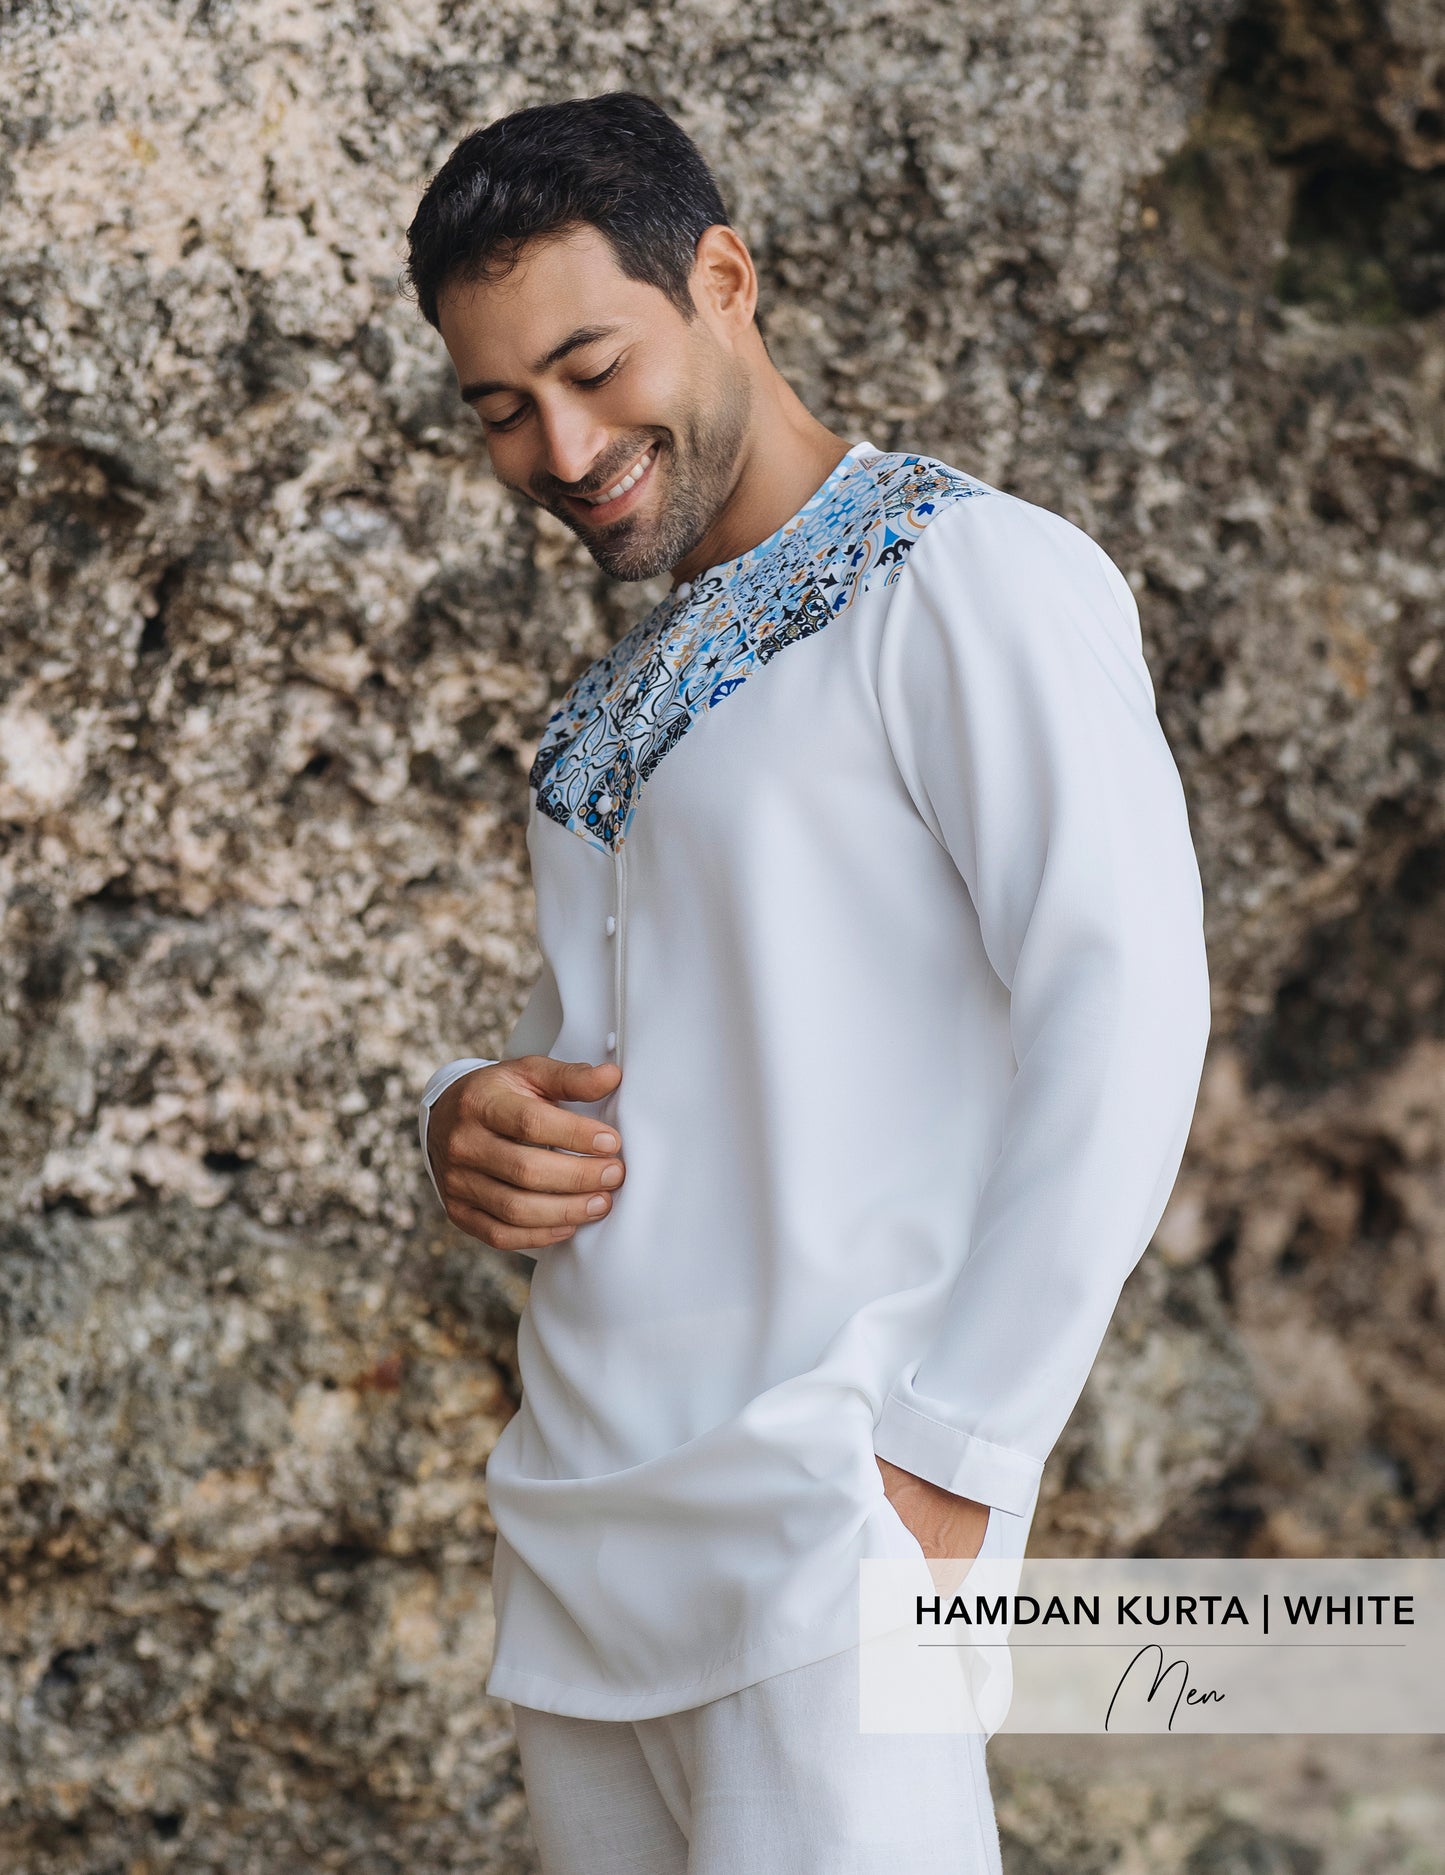 Hamdan Kurta | White